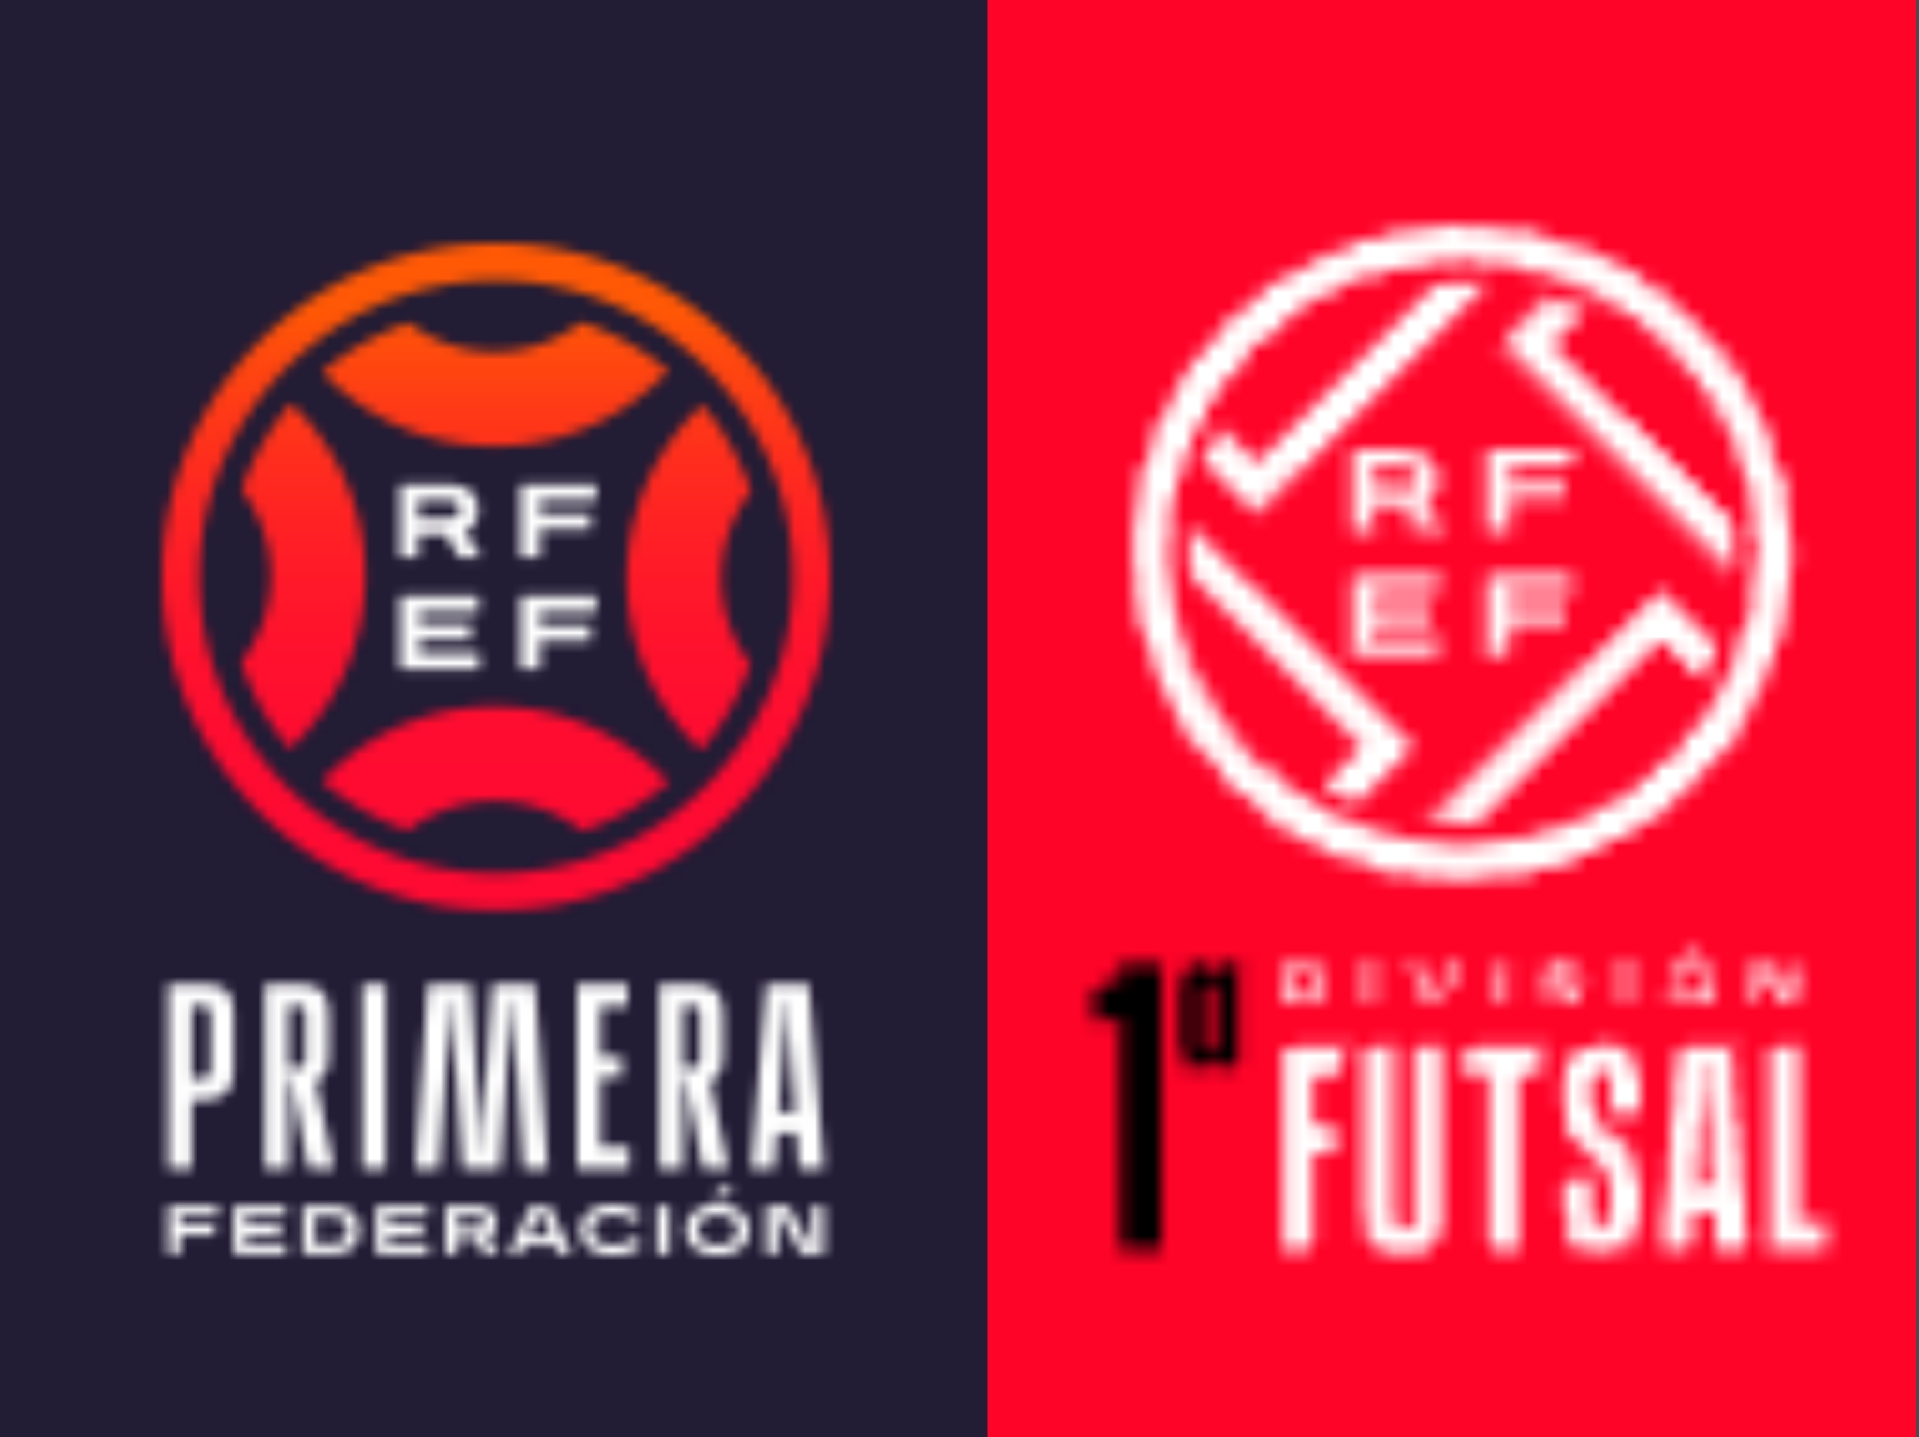 La RFEF adjudica los derechos de Primera Federación y Primera División de Fútbol Sala a ATM